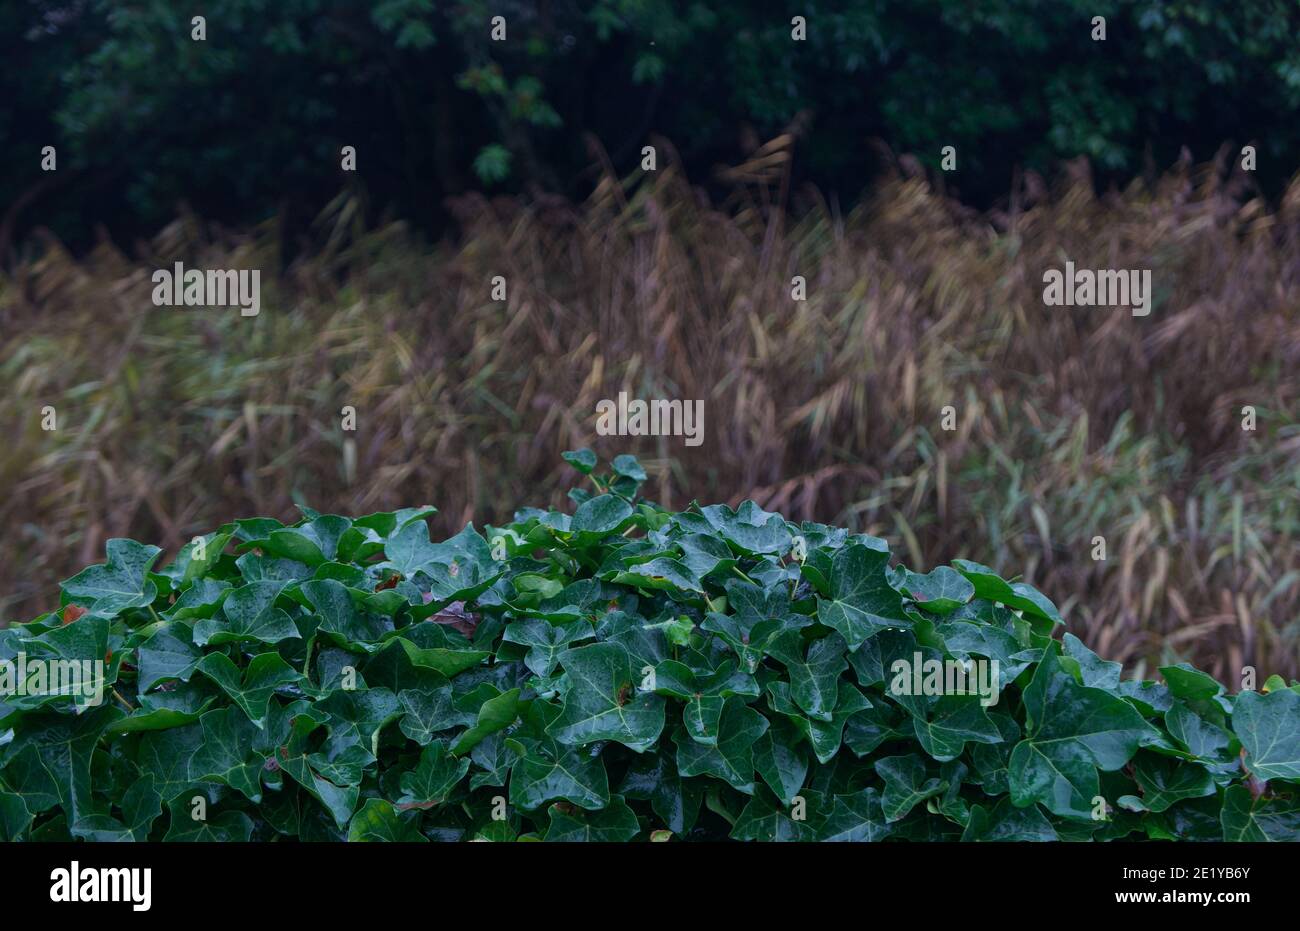 Sfondo invernale con edera sempreverde in primo piano e erba marrone dietro Foto Stock